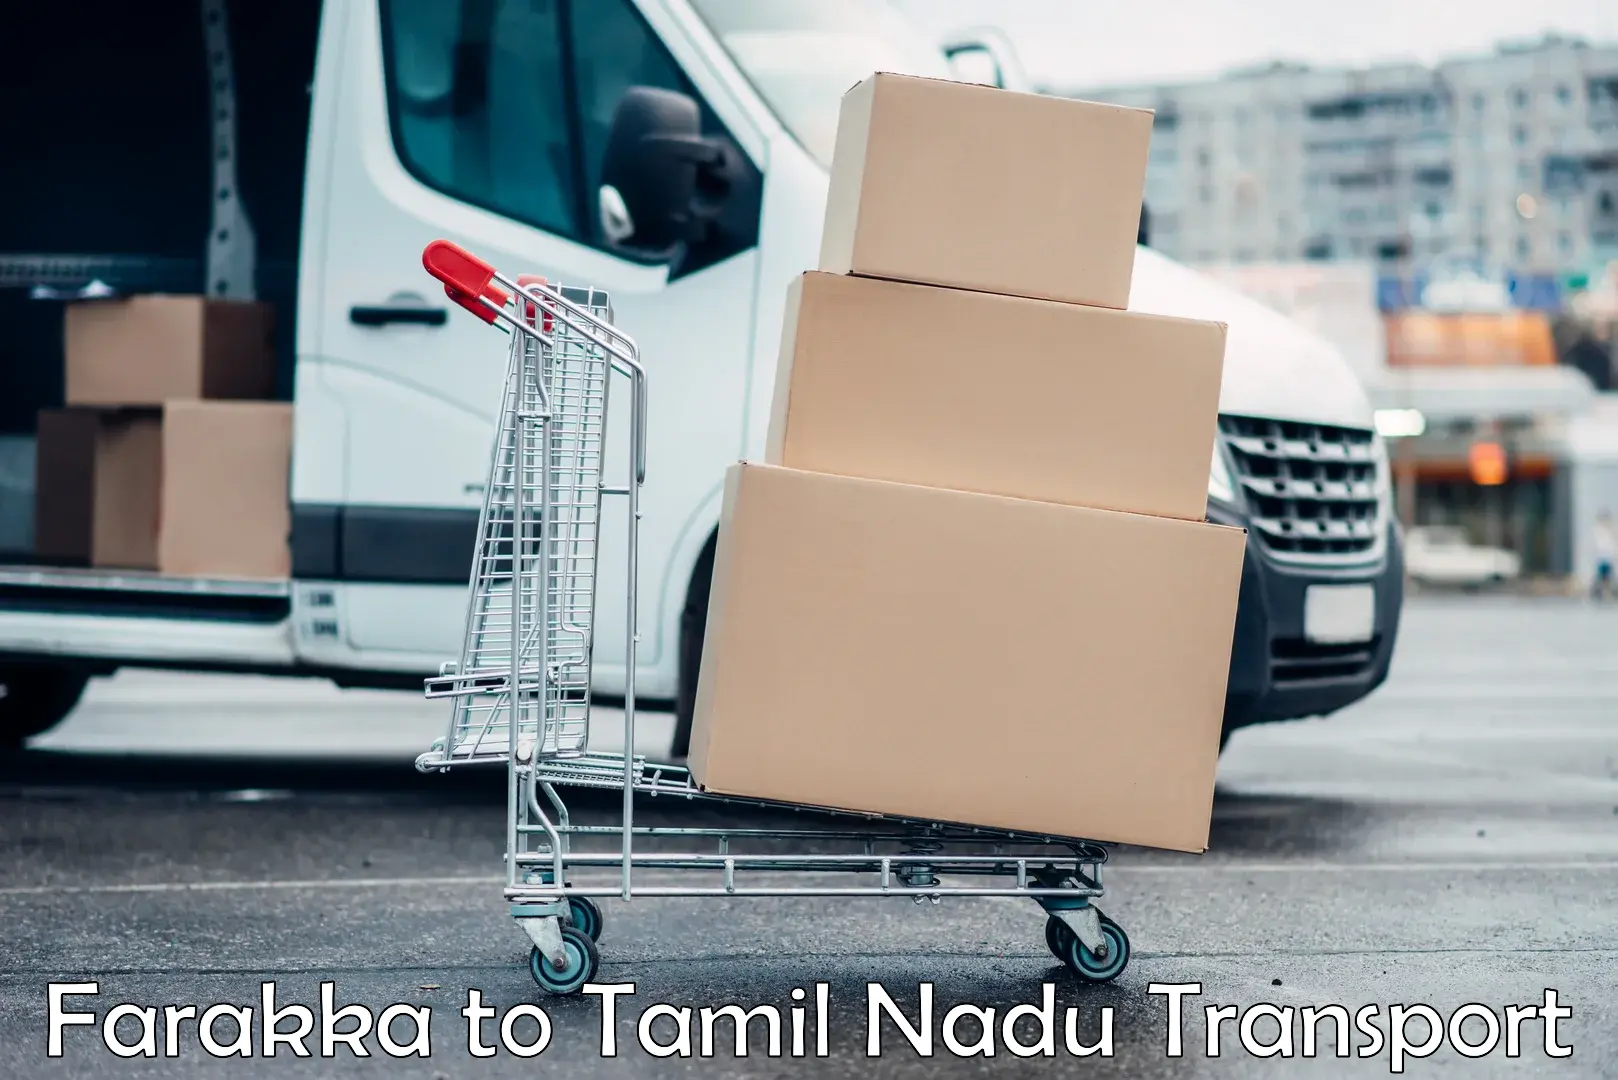 All India transport service Farakka to Tirunelveli